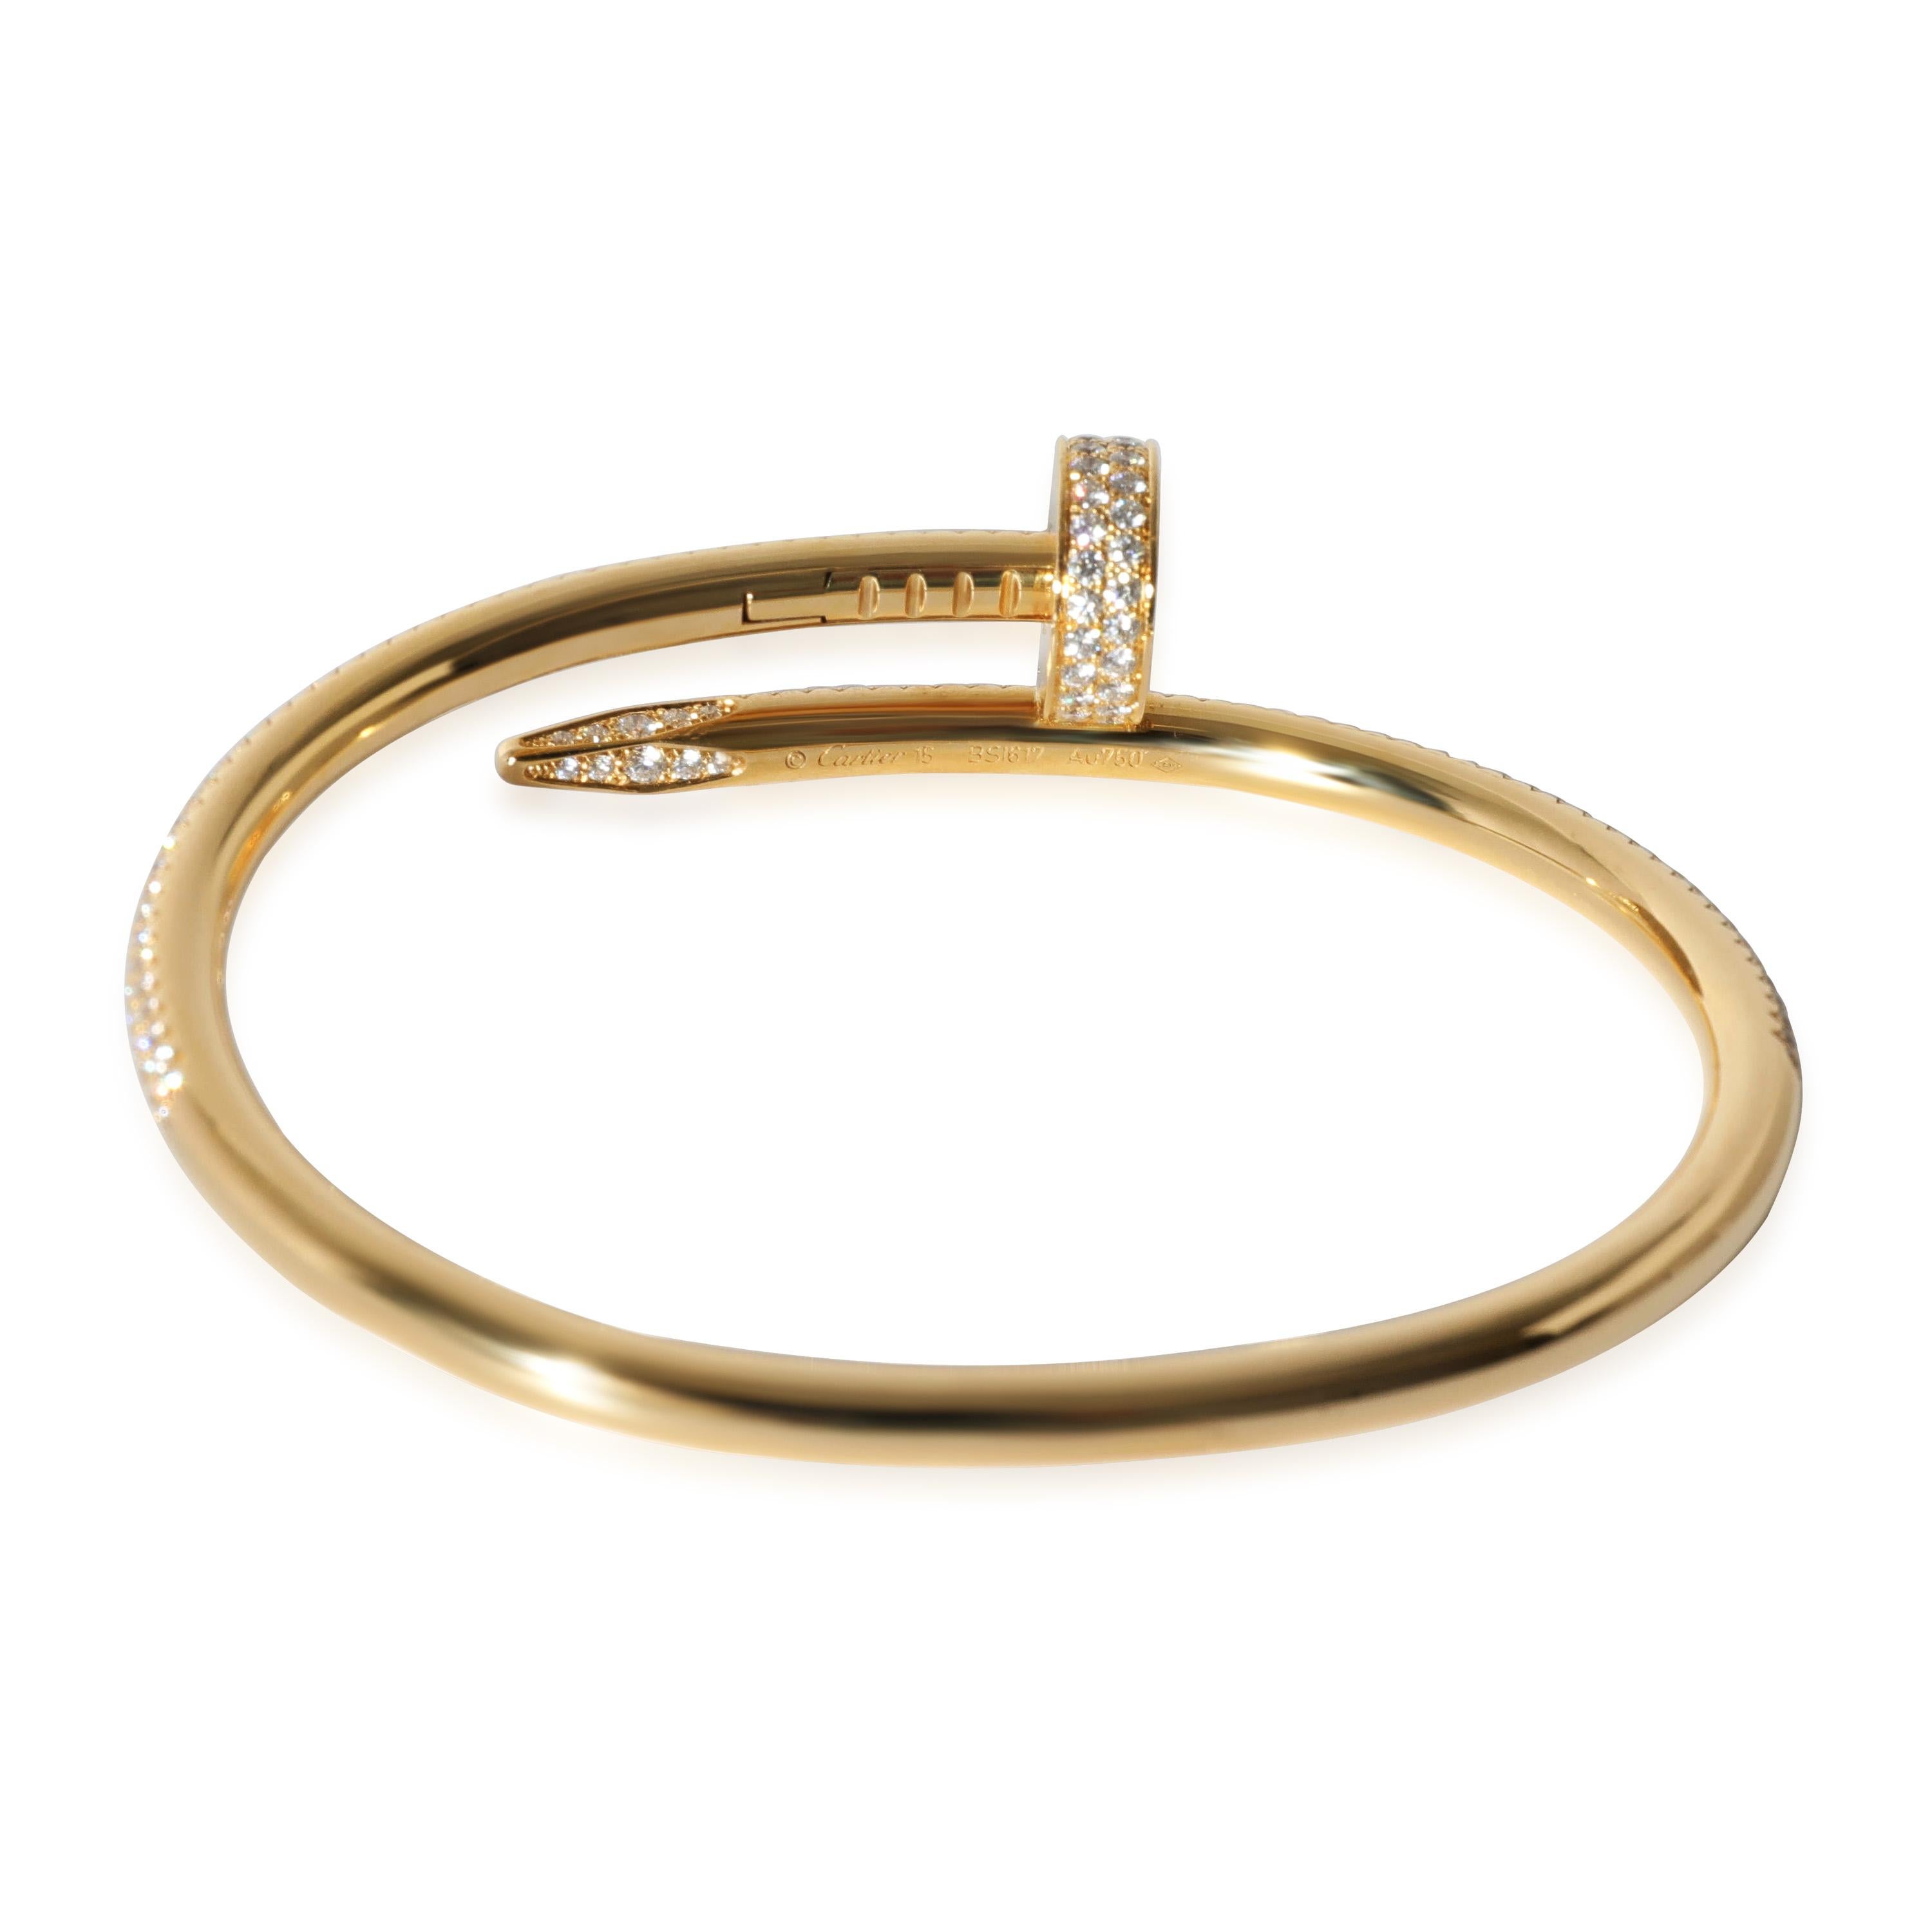 Women's or Men's Cartier Juste Un Clou Diamond Pave Bracelet in 18k Yellow Gold 2.26 Ctw